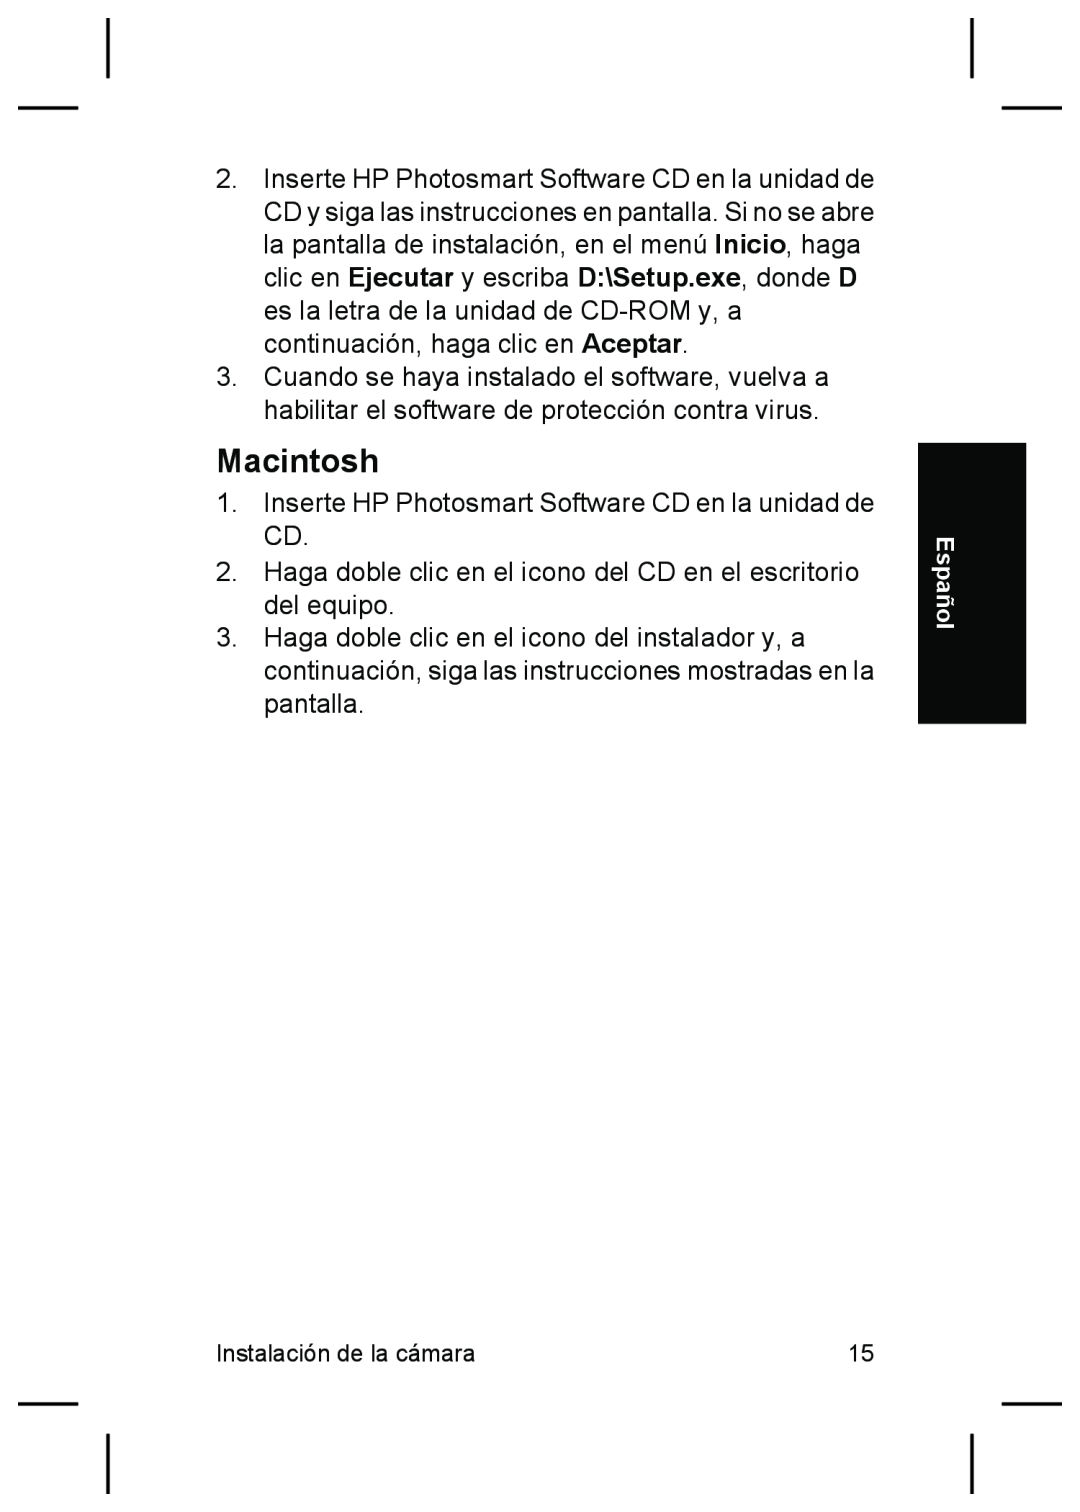 HP R927 manual Macintosh, Inserte HP Photosmart Software CD en la unidad de CD 